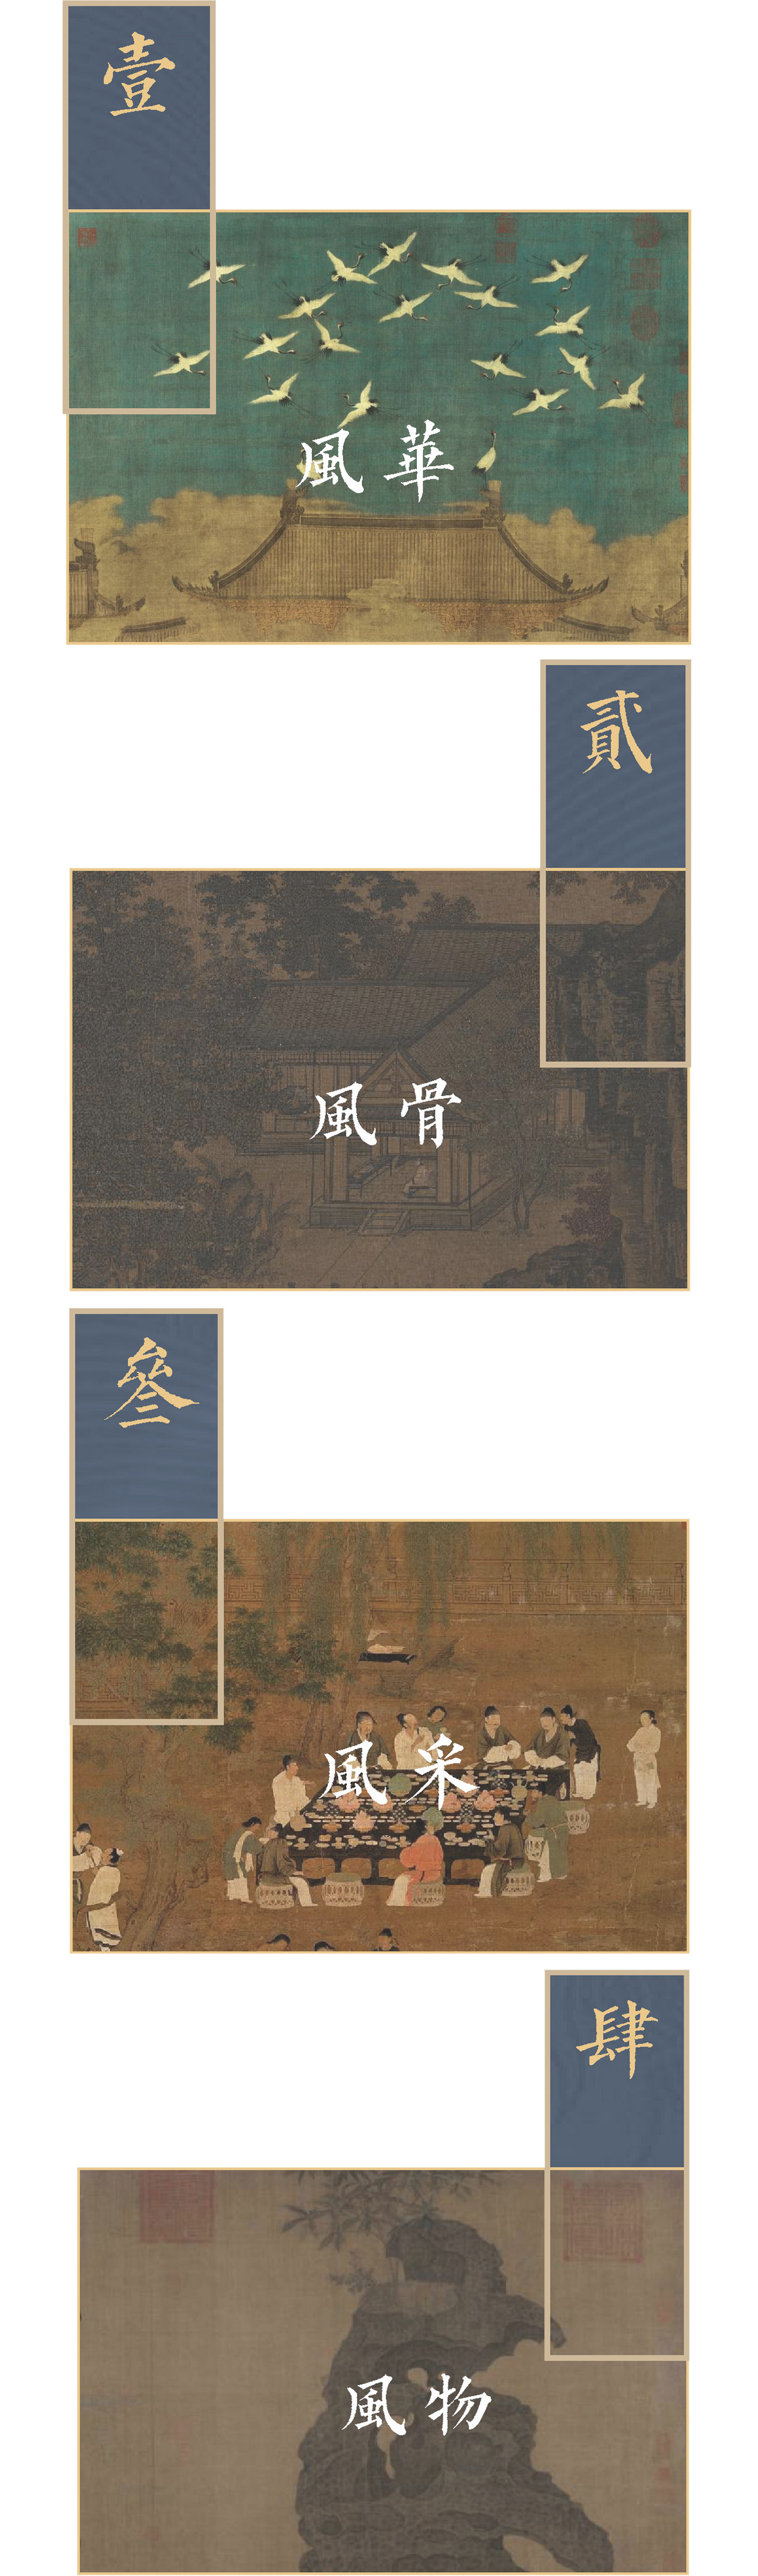 成都·龙湖三千云锦 景观设计  / 蓝调国际